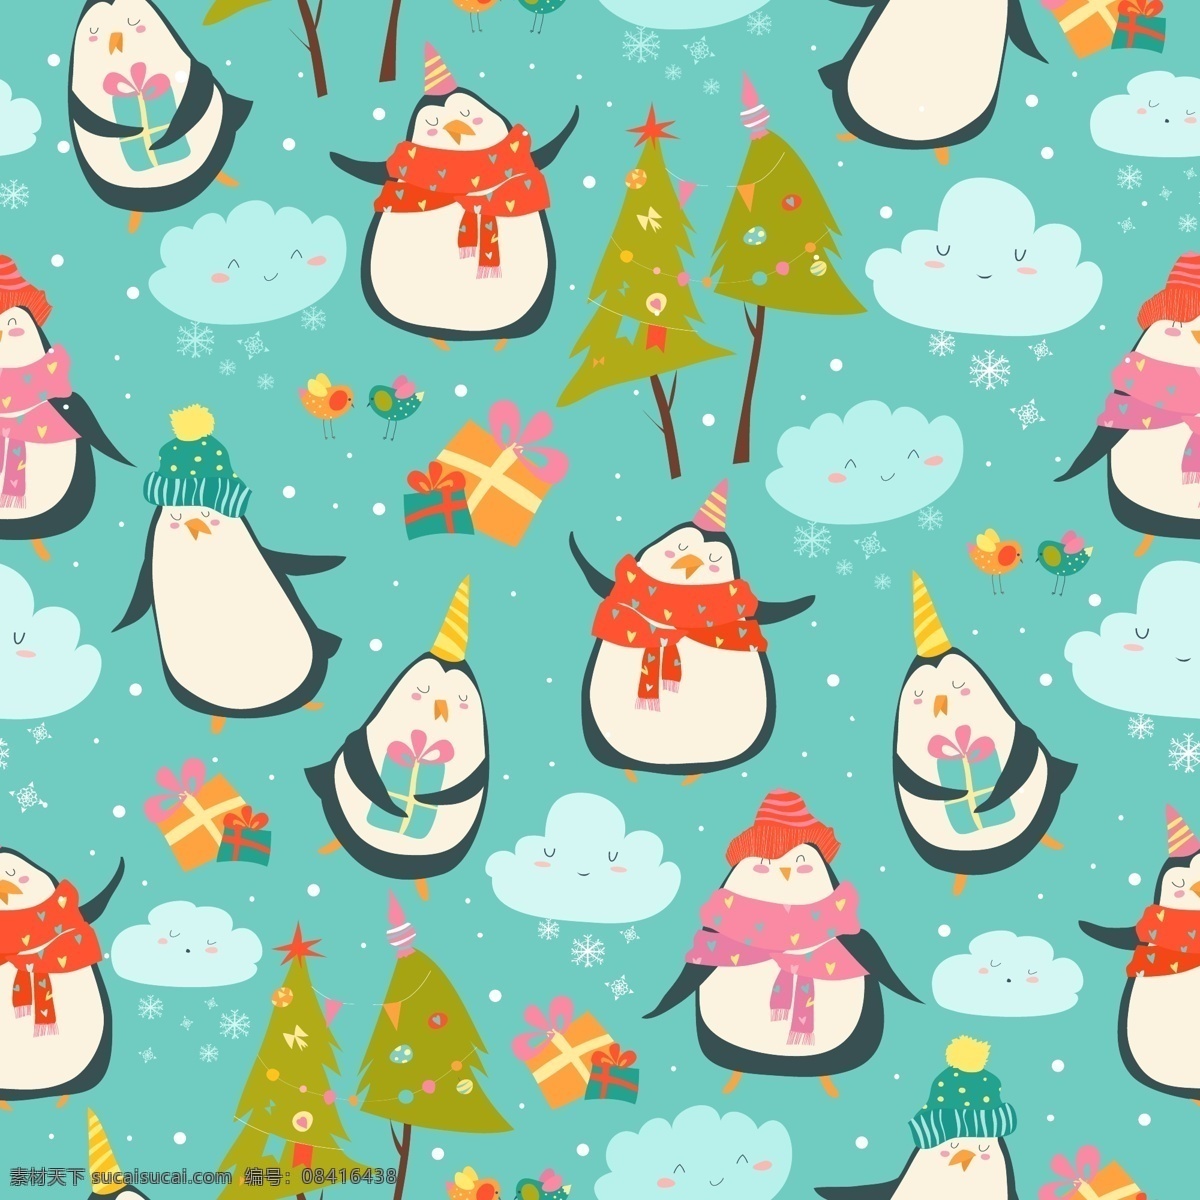 卡通 企鹅 元素 背景 卡通素材 背景素材 圣诞树 白云 矢量插图 企鹅元素